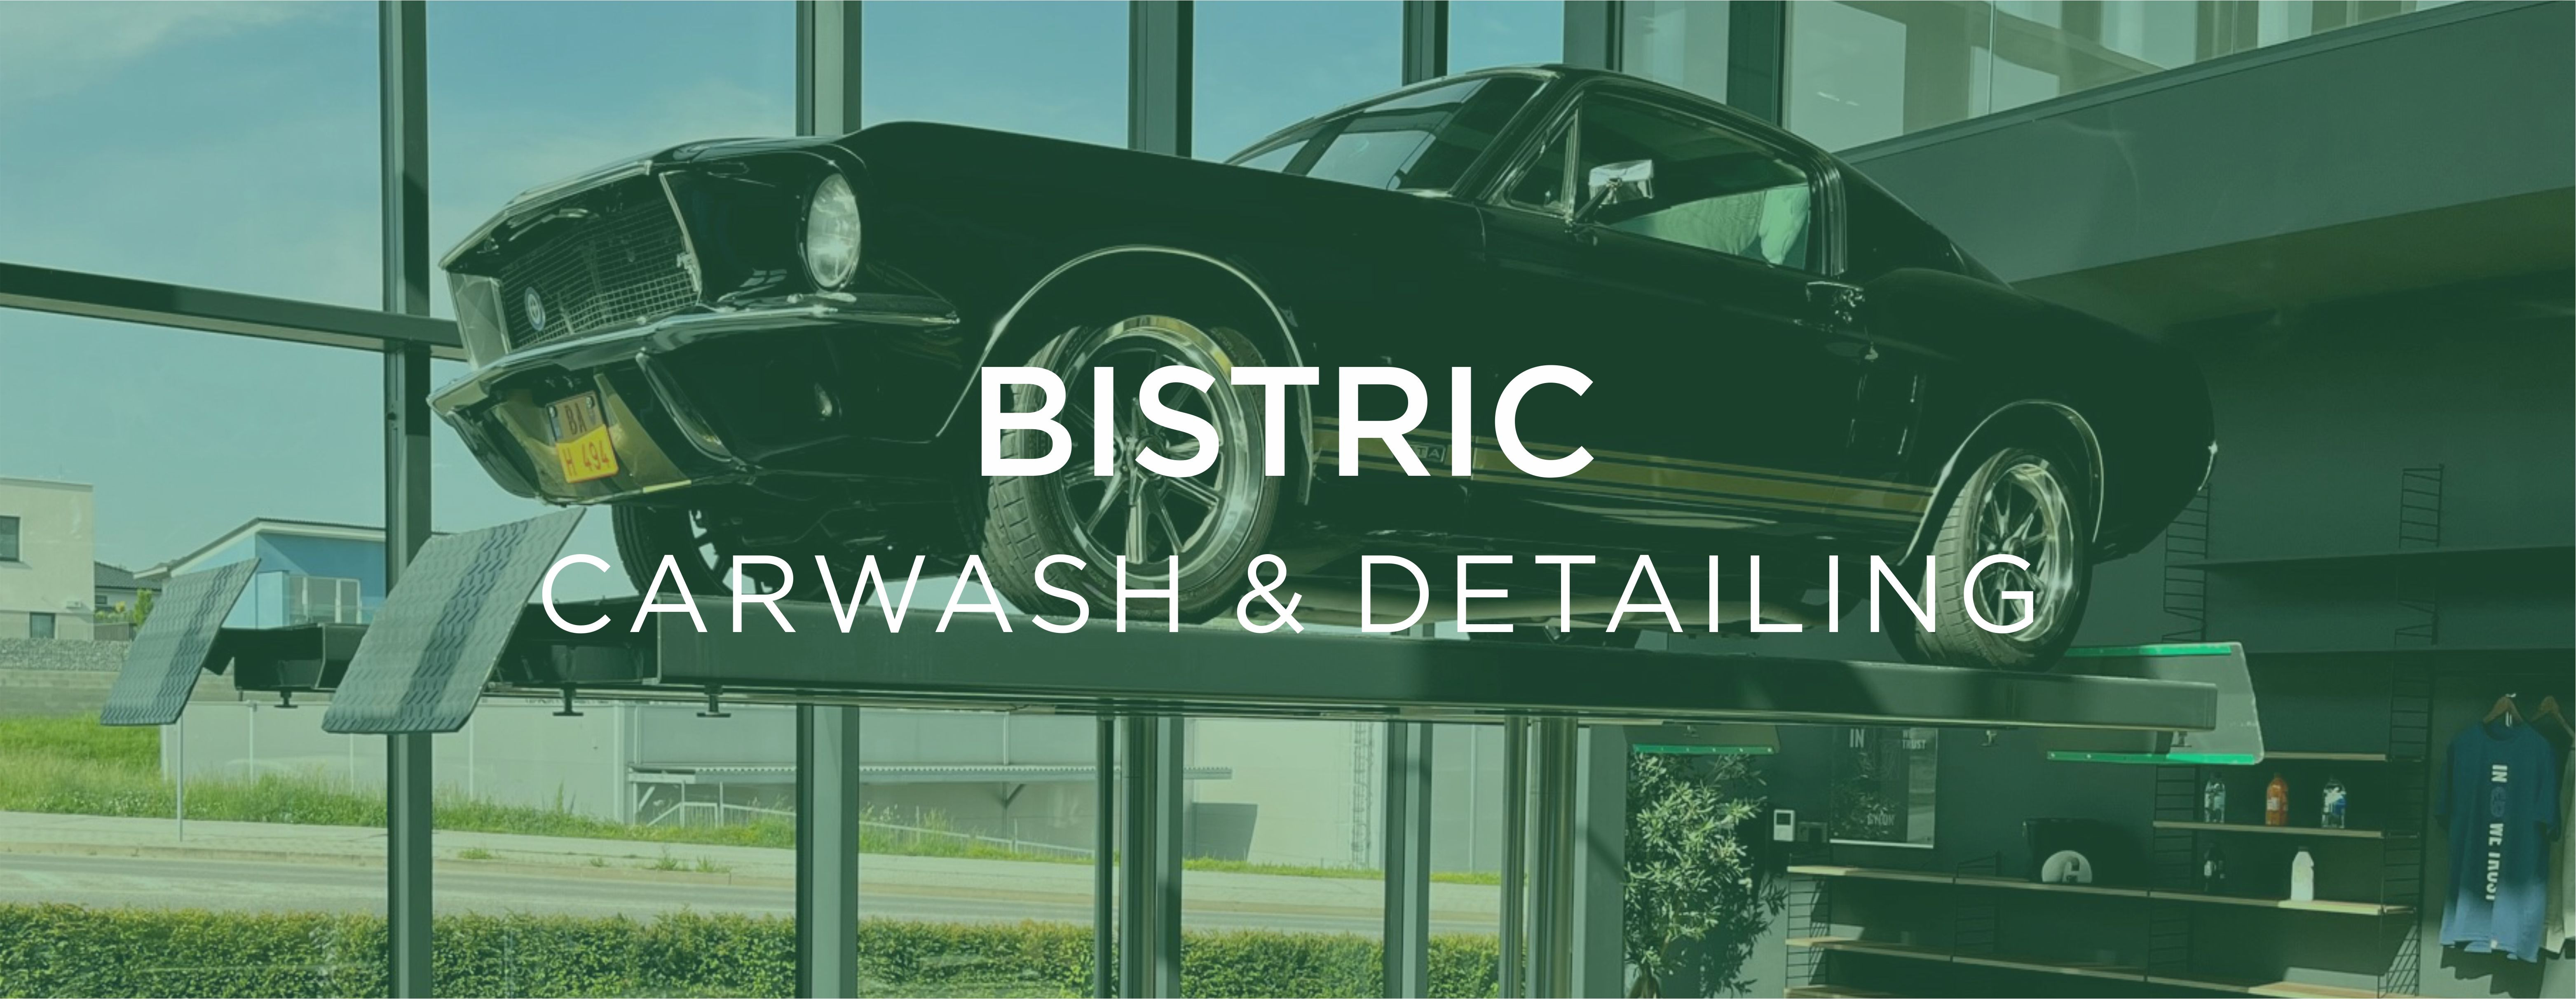 Bistric Carwash & Detailing